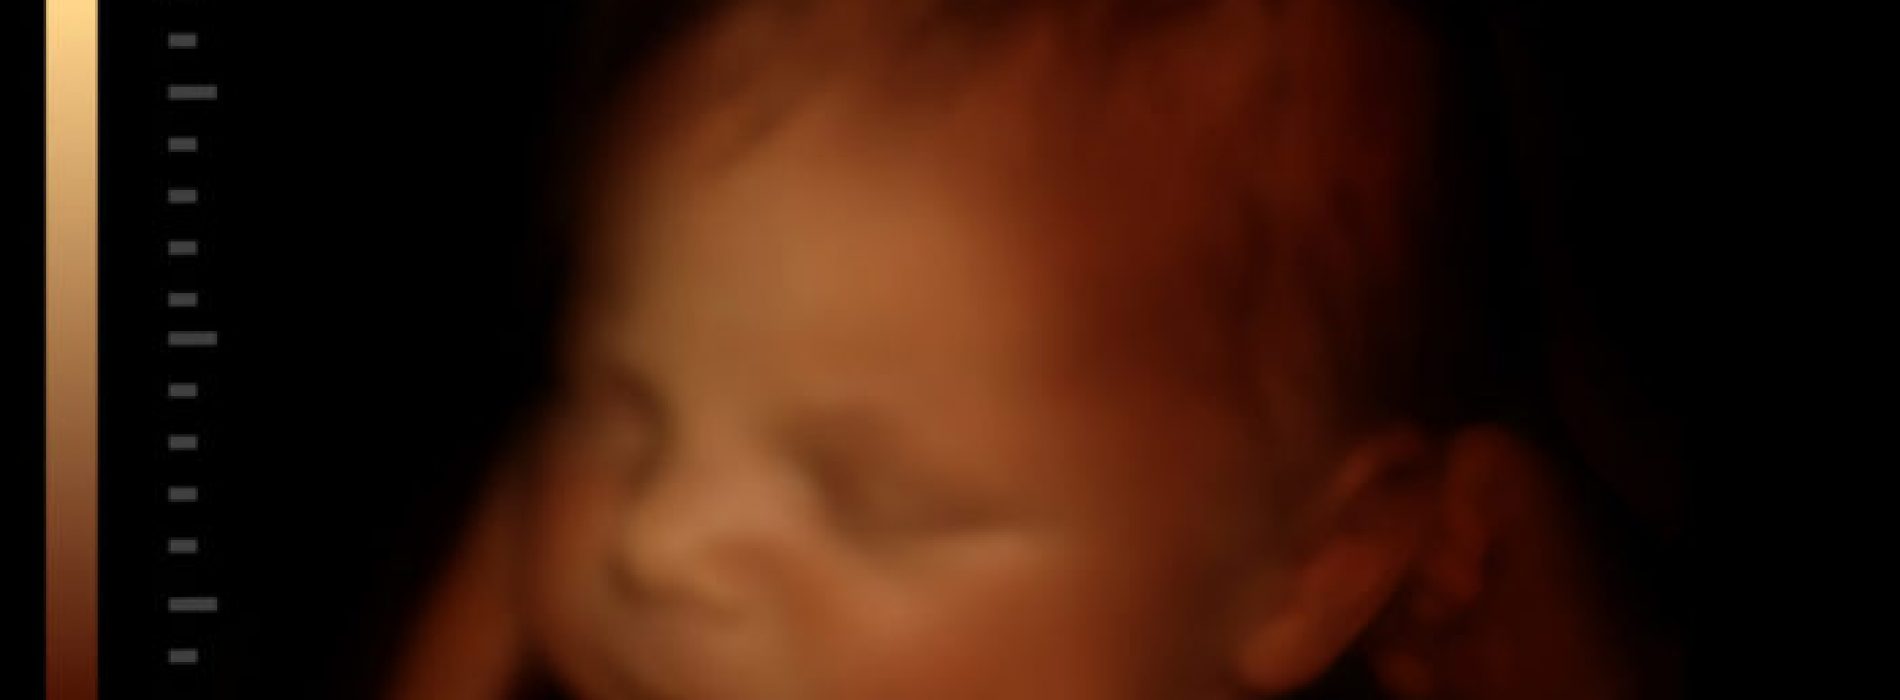 Bevestigd: Abortus lichaamsdelen groep geeft toe dat ze kloppende harten en volledig intacte babyhoofden “geoogst” hebben van abortussen van Planned Parenthood